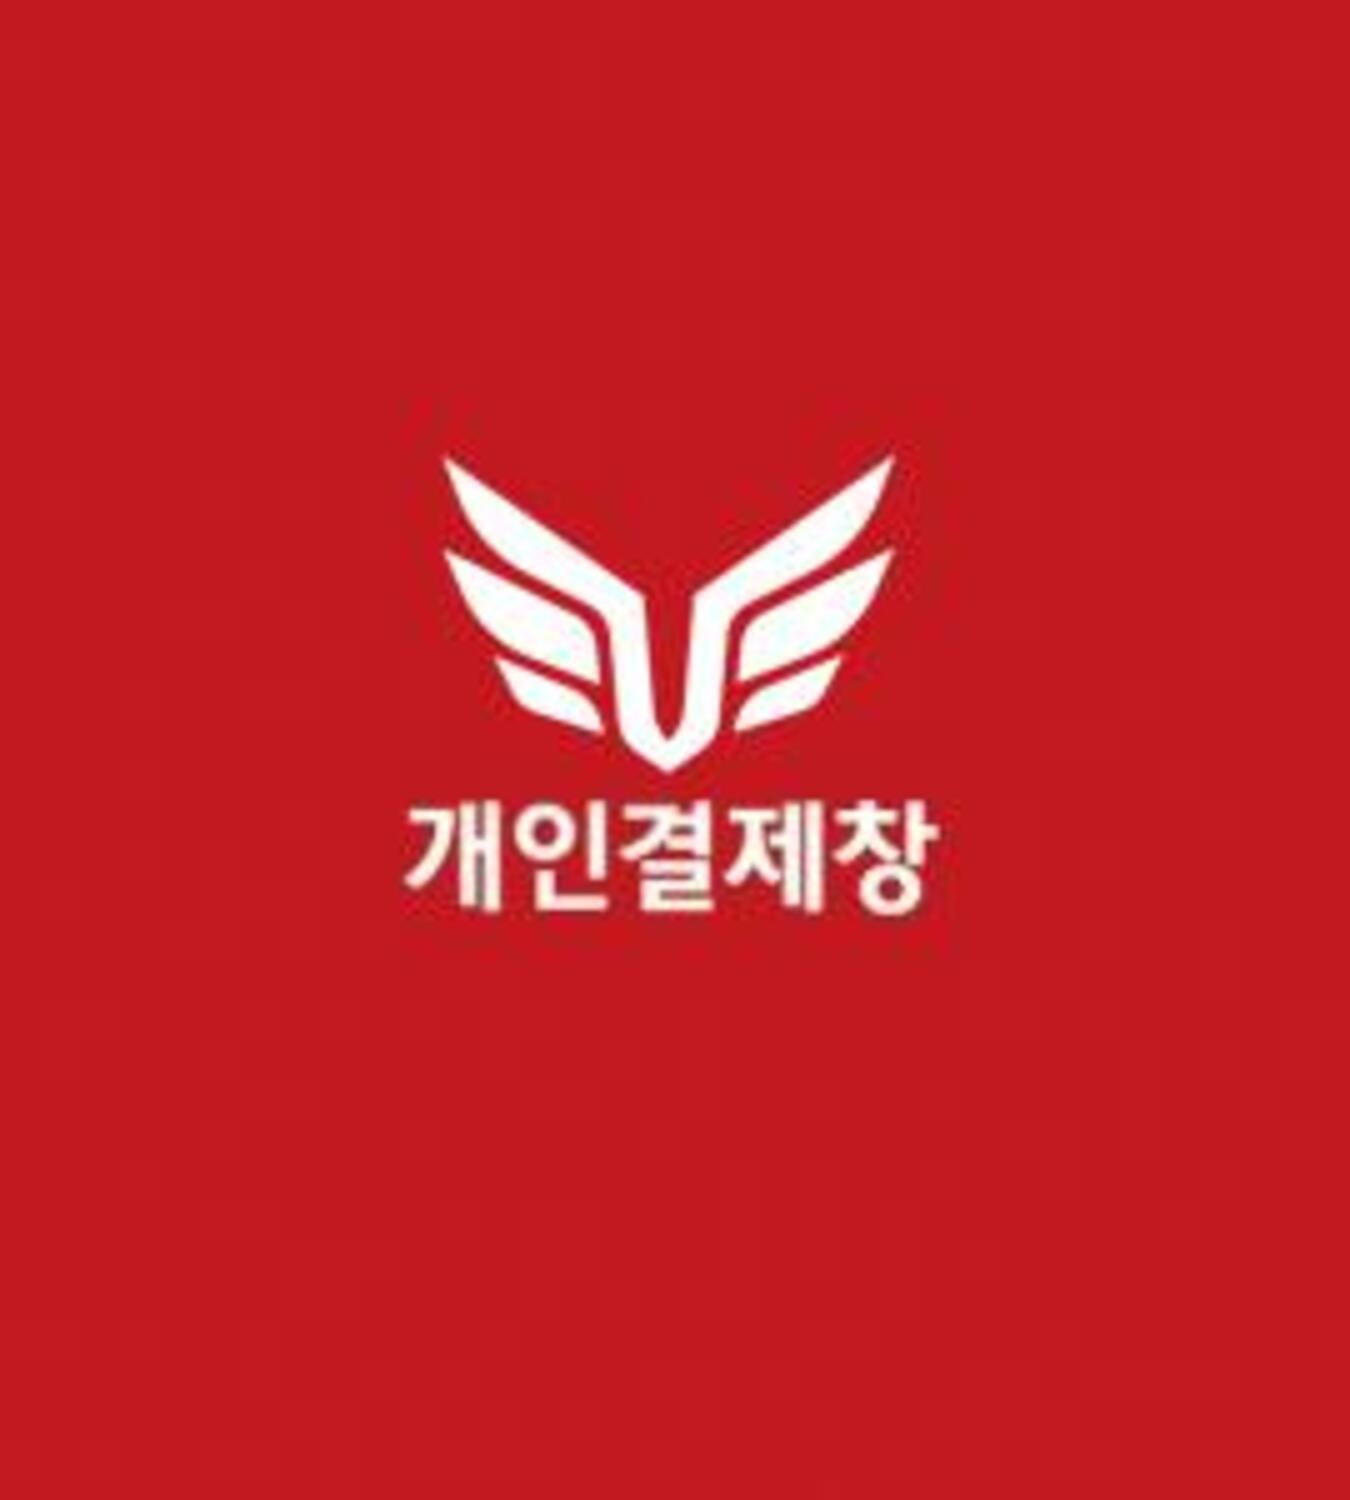 ★자운초등학교 유경아 고객님 개인결제창★